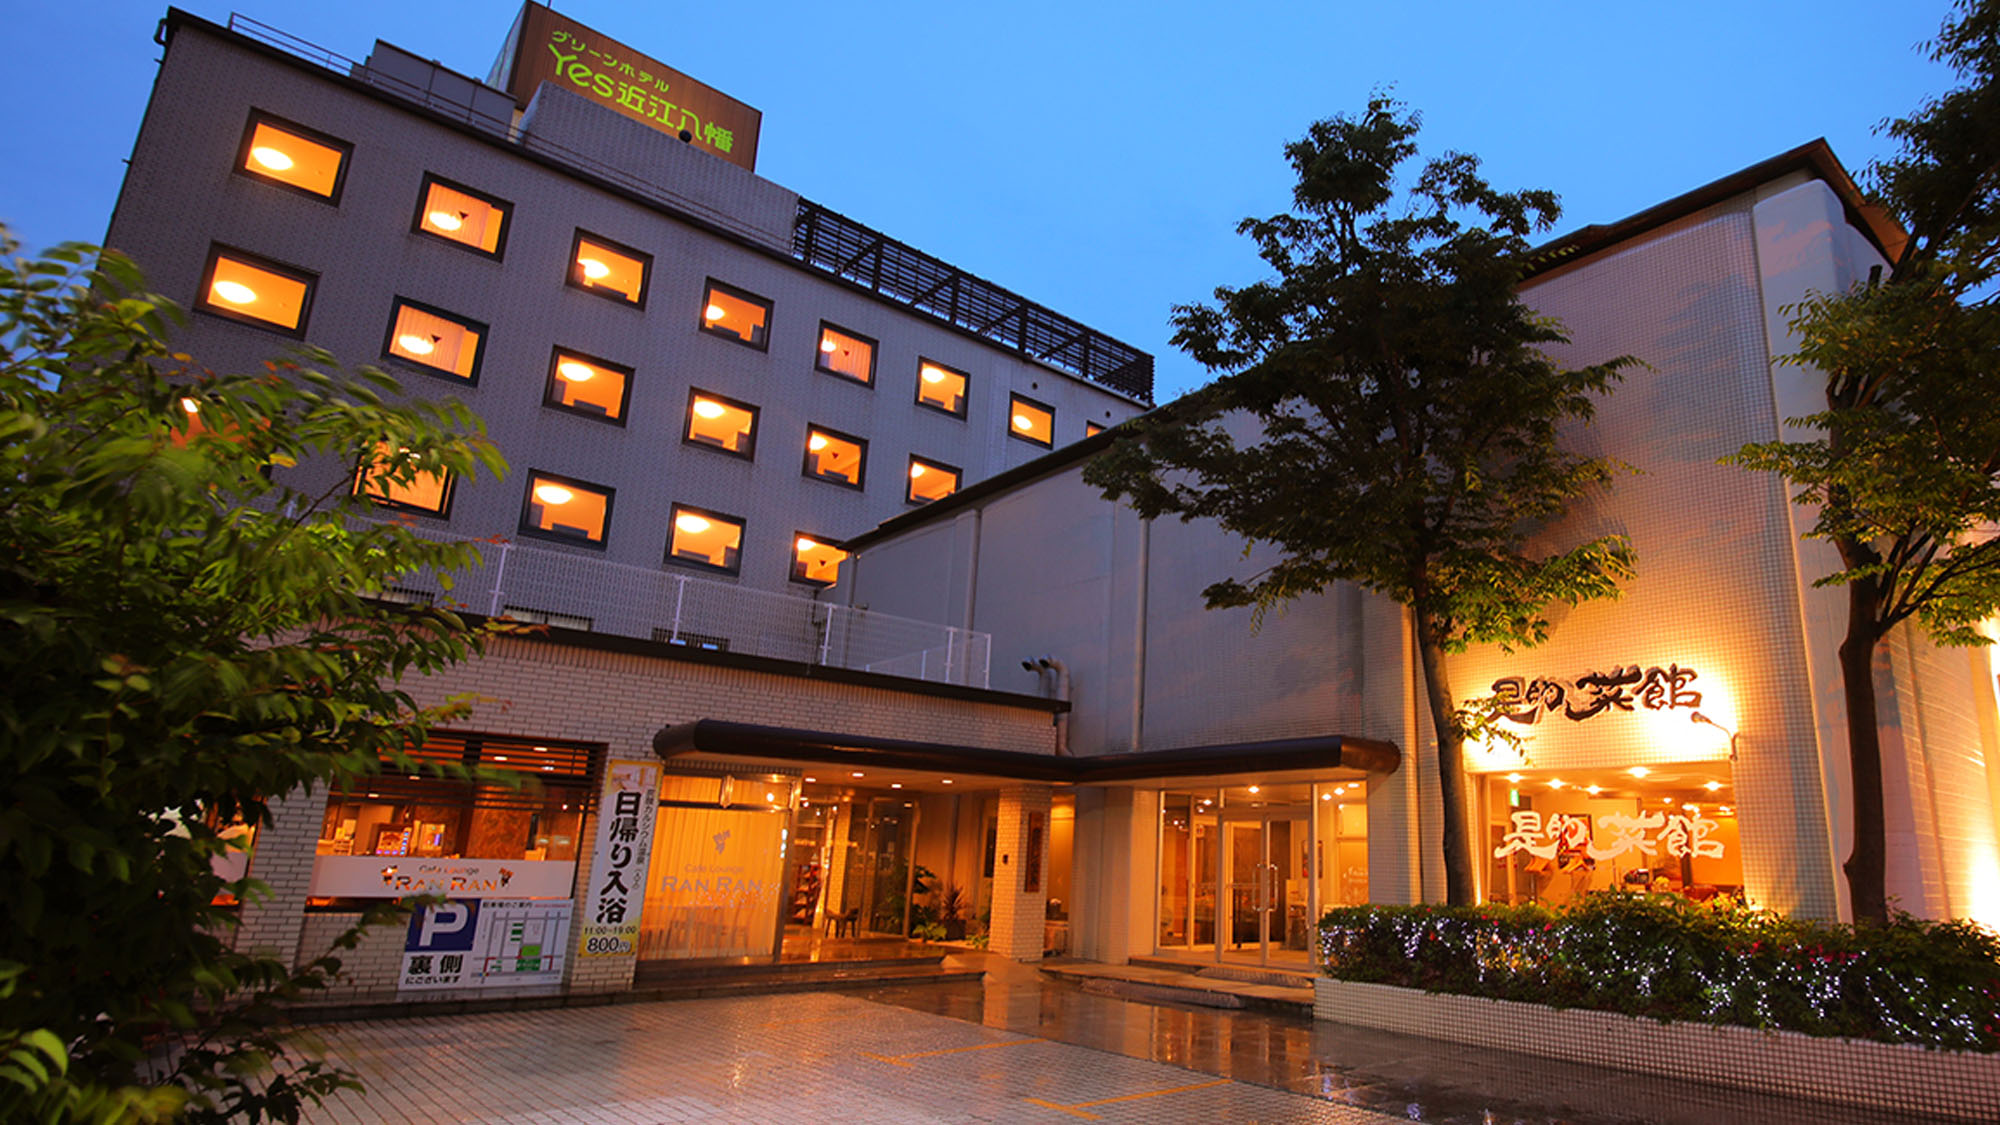 浅小井祇園まつりに便利で大部屋があるホテル